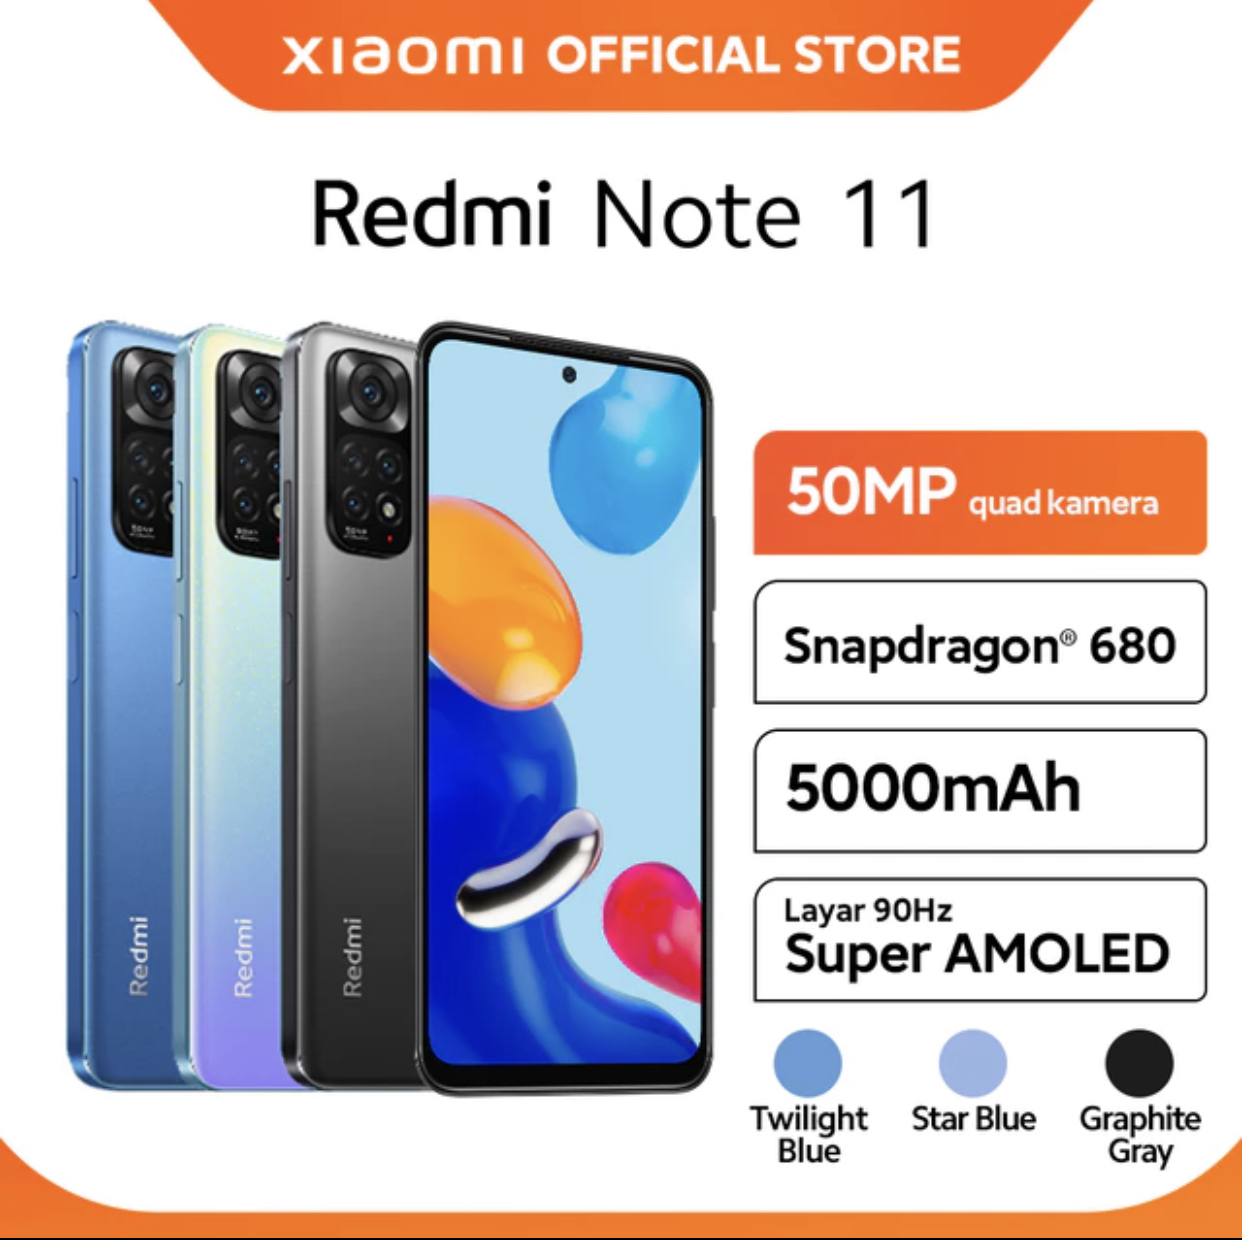 10. Xiaomi redmi note 11